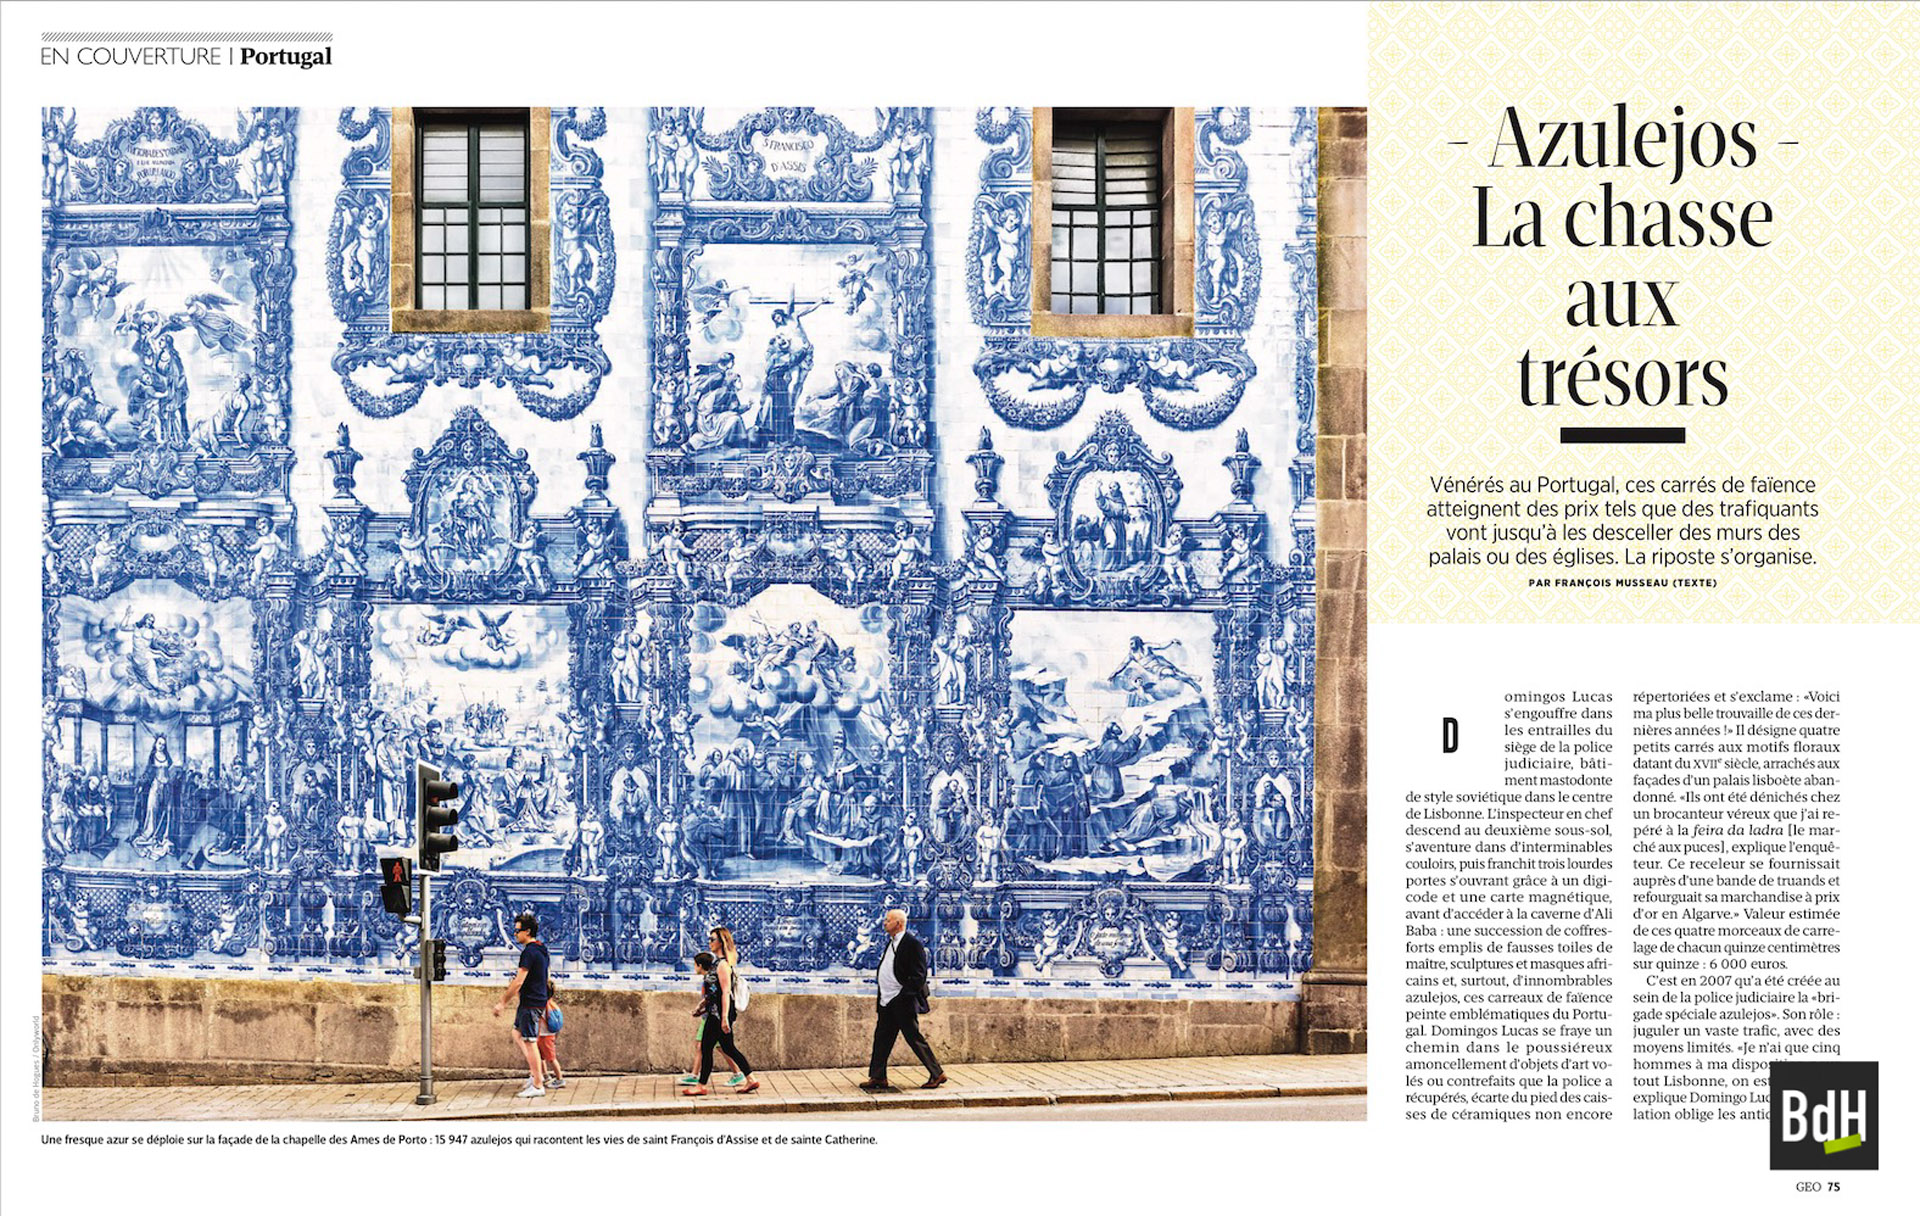 Azulejos, la chasse aux trésors Vénérés au Portugal, ces carrés de faïence atteignent des prix tels que des trafiquants vont jusqu'à les desceller des murs des palais ou des églises. La riposte s'organise.